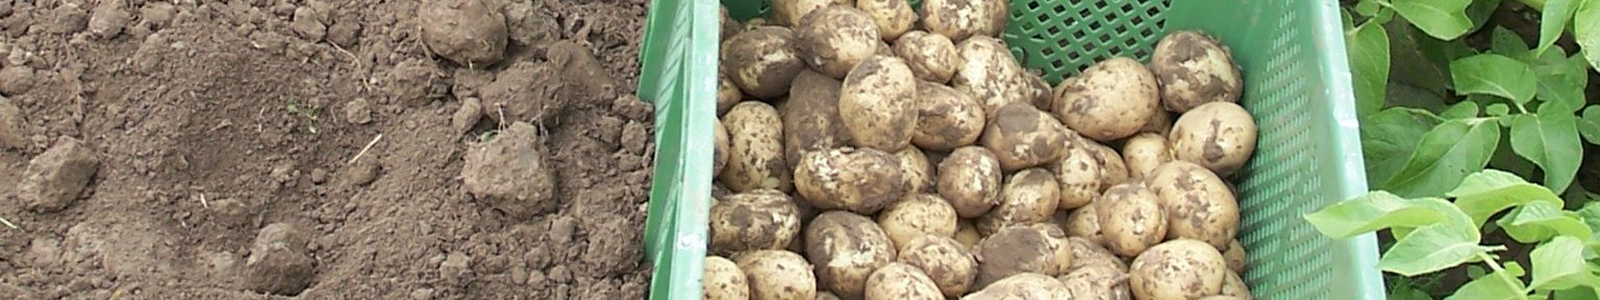 Kisten mit je Kartoffeln, Erde und Kartoffelpflanzen ©Feuerbach